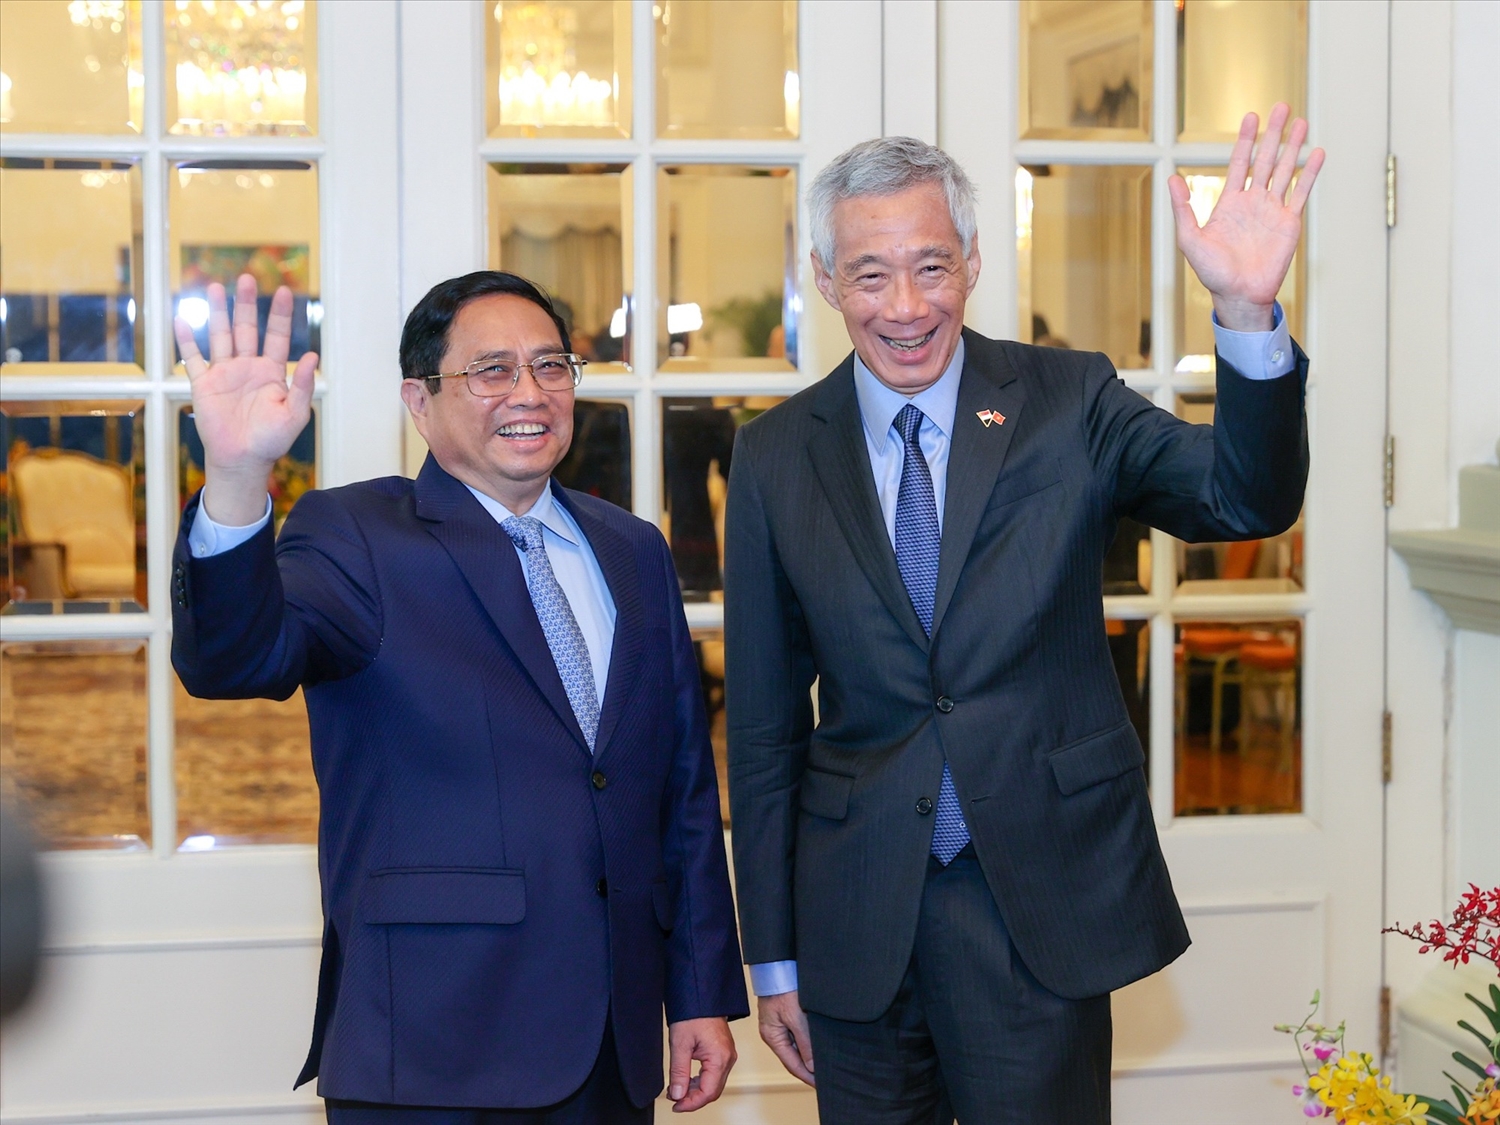 Thủ tướng Lý Hiển Long nhiệt liệt chào mừng Thủ tướng Phạm Minh Chính thăm chính thức Singapore, nhấn mạnh chuyến thăm góp phần tạo xung lực mạnh mẽ cho quan hệ Đối tác Chiến lược tốt đẹp giữa hai nước - Ảnh: VGP/Nhật Bắc